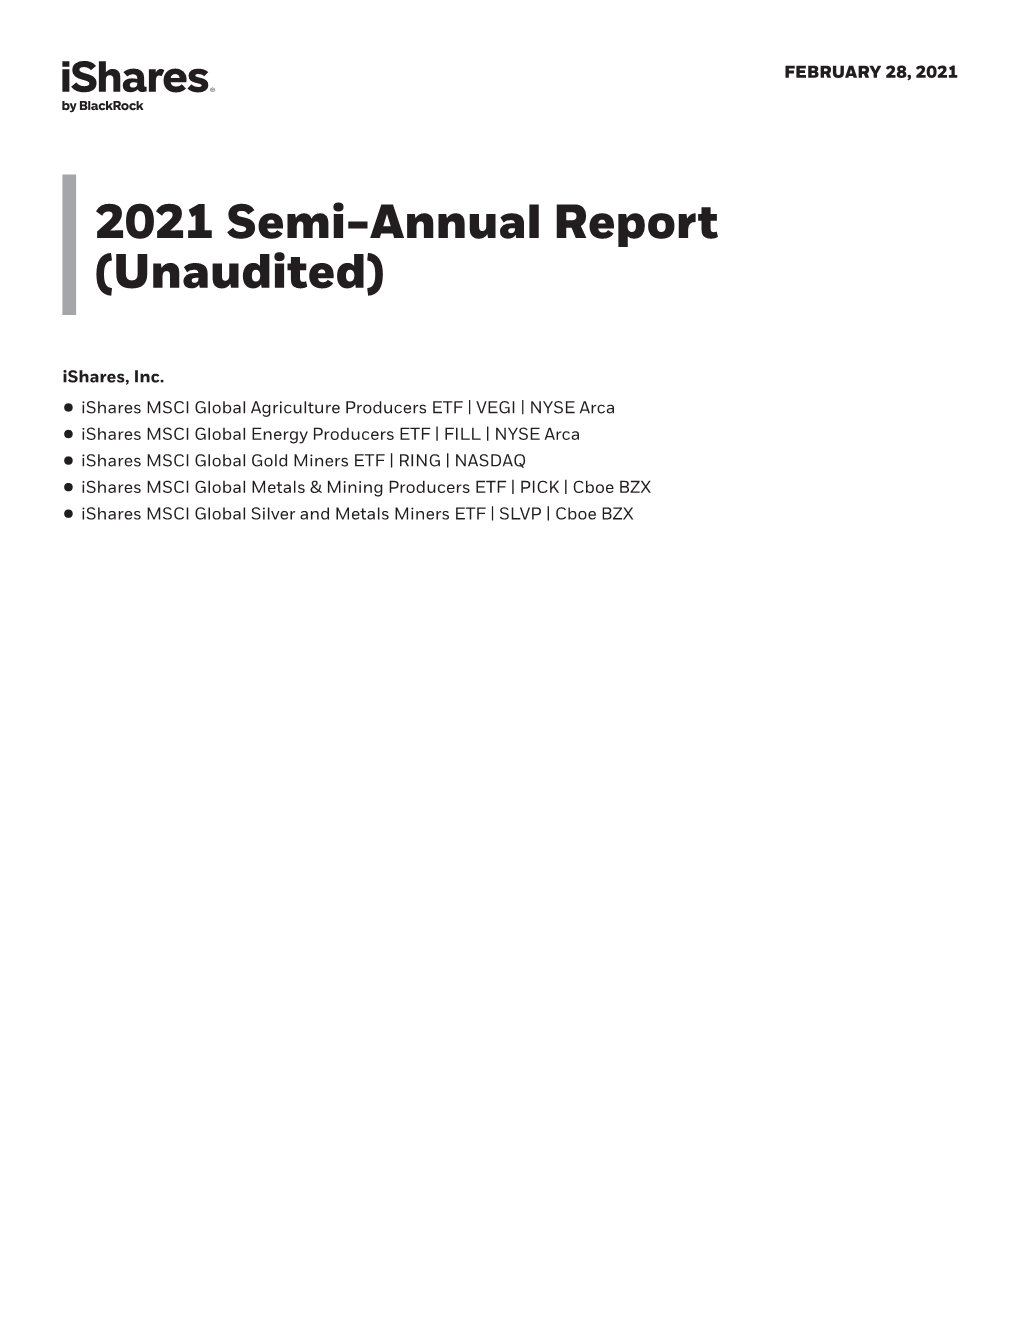 Semi-Annual Report (Unaudited) Ishares, Inc